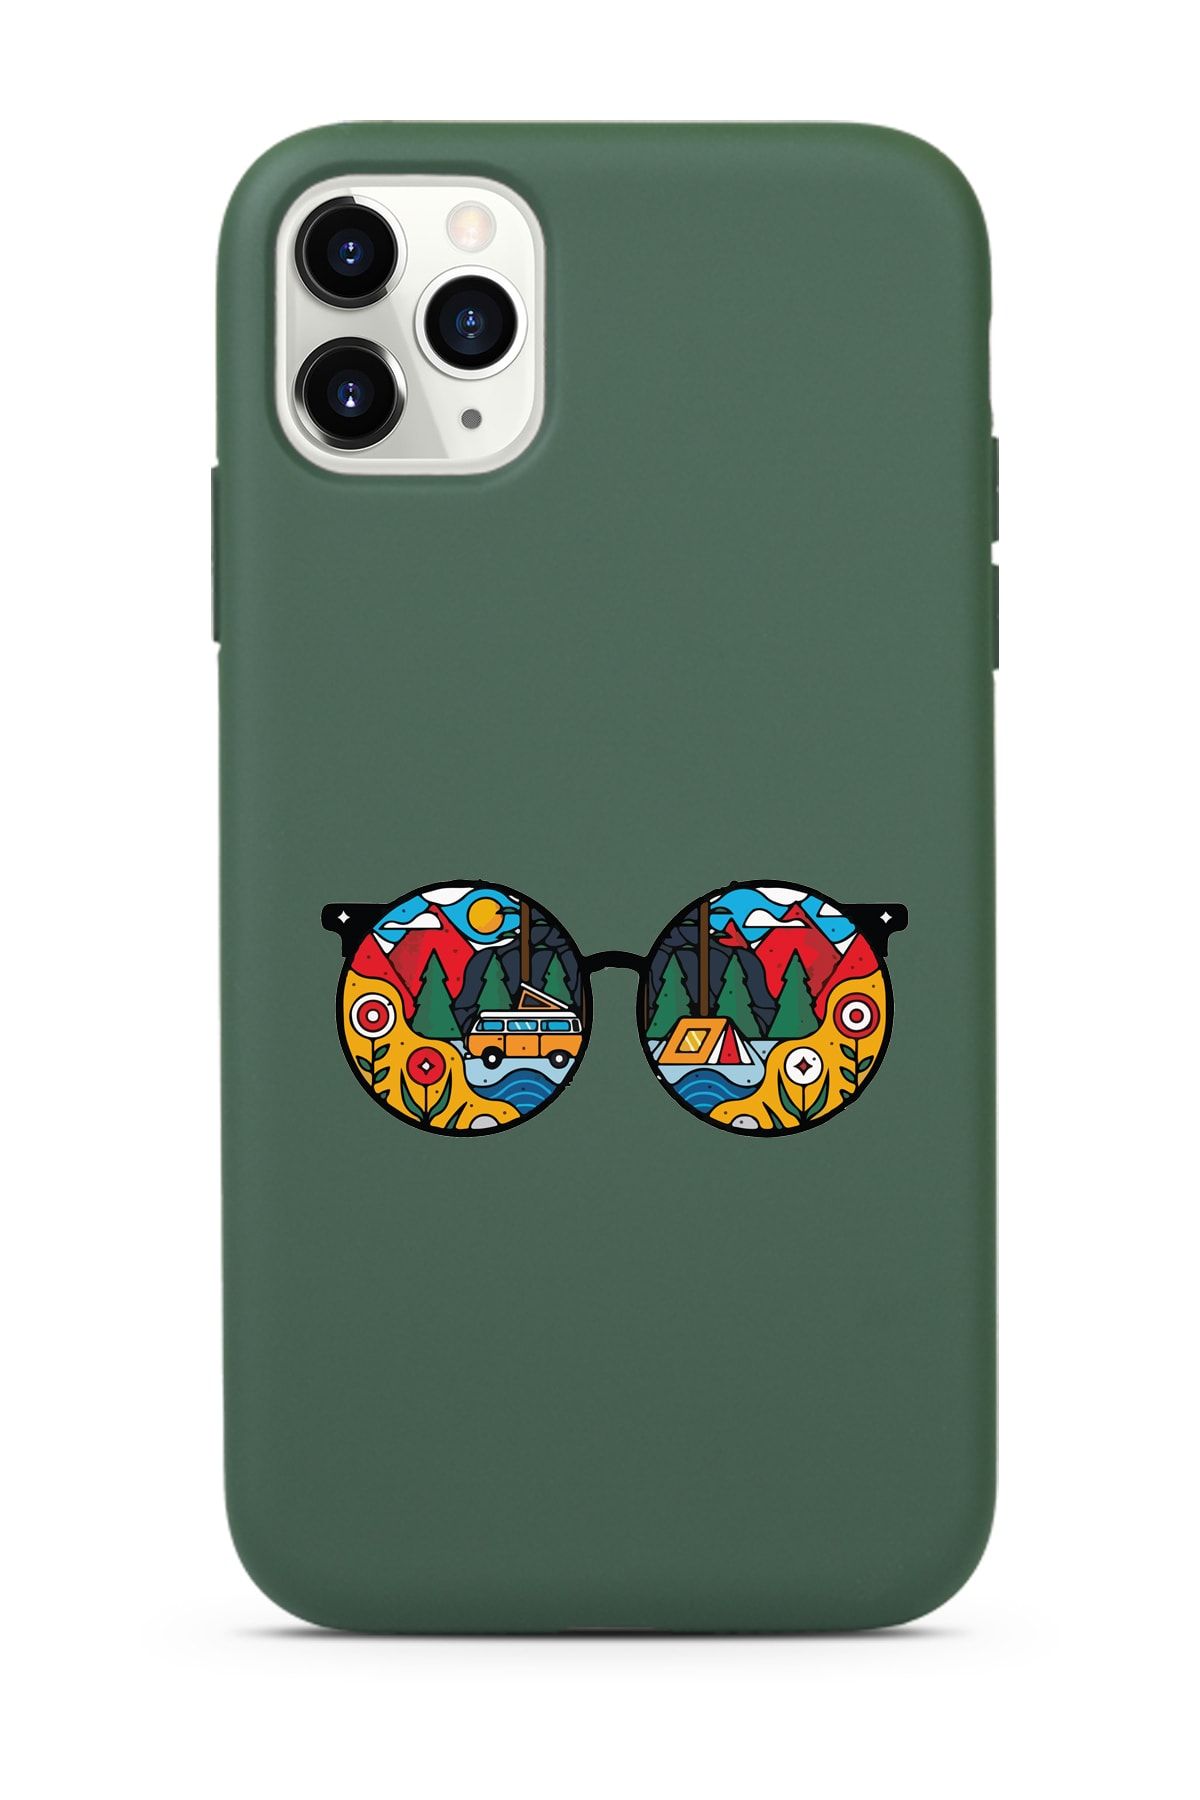 Spoyi Koyu Yeşil Lansman Kılıf Iphone 11 Pro Max